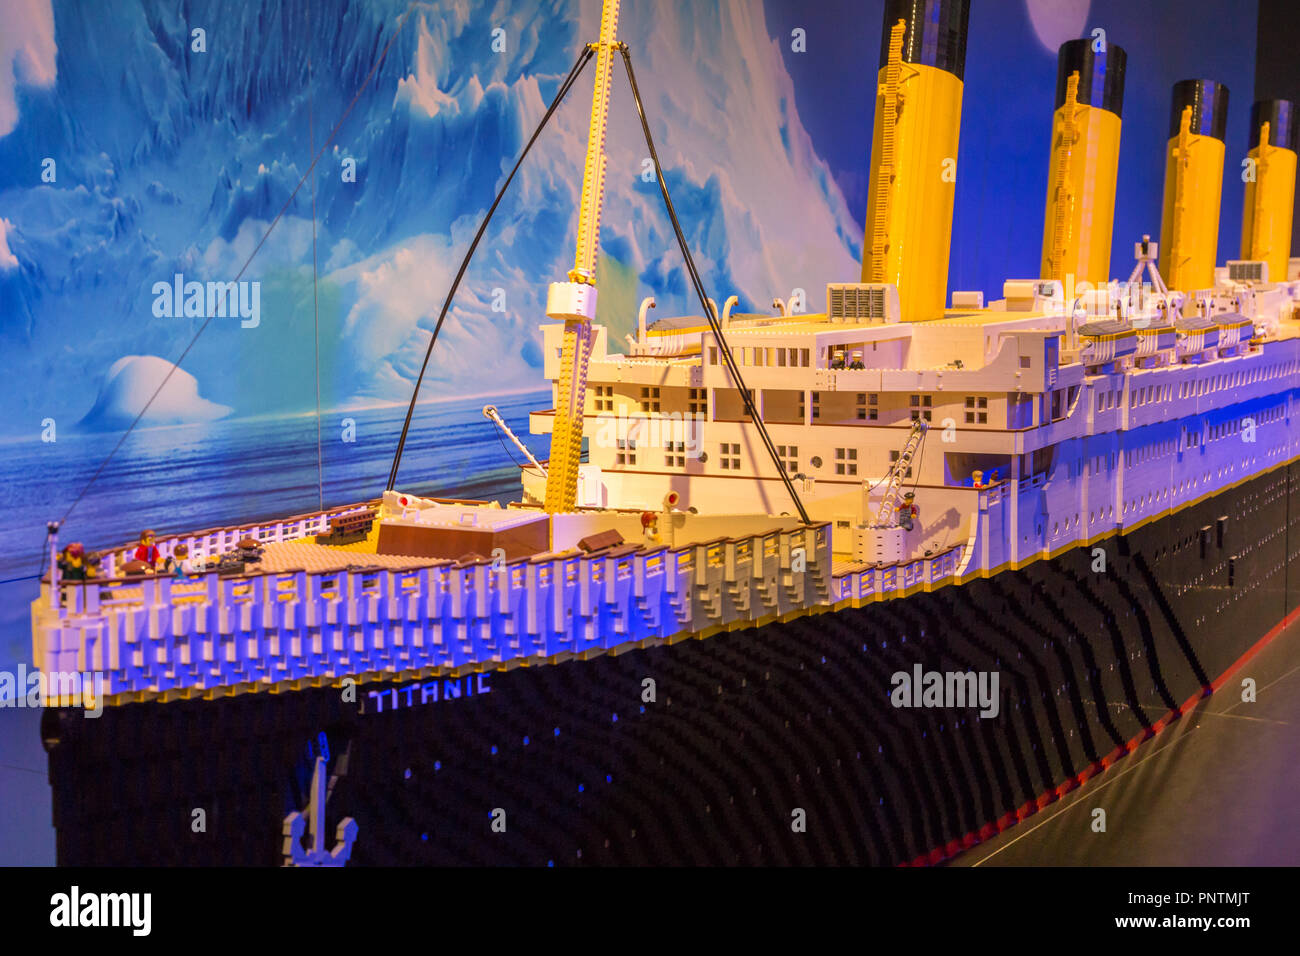 Modèle Lego du Titanic dans le musée de la science dans la Cité des Arts et des Sciences de Valence, Espagne Banque D'Images